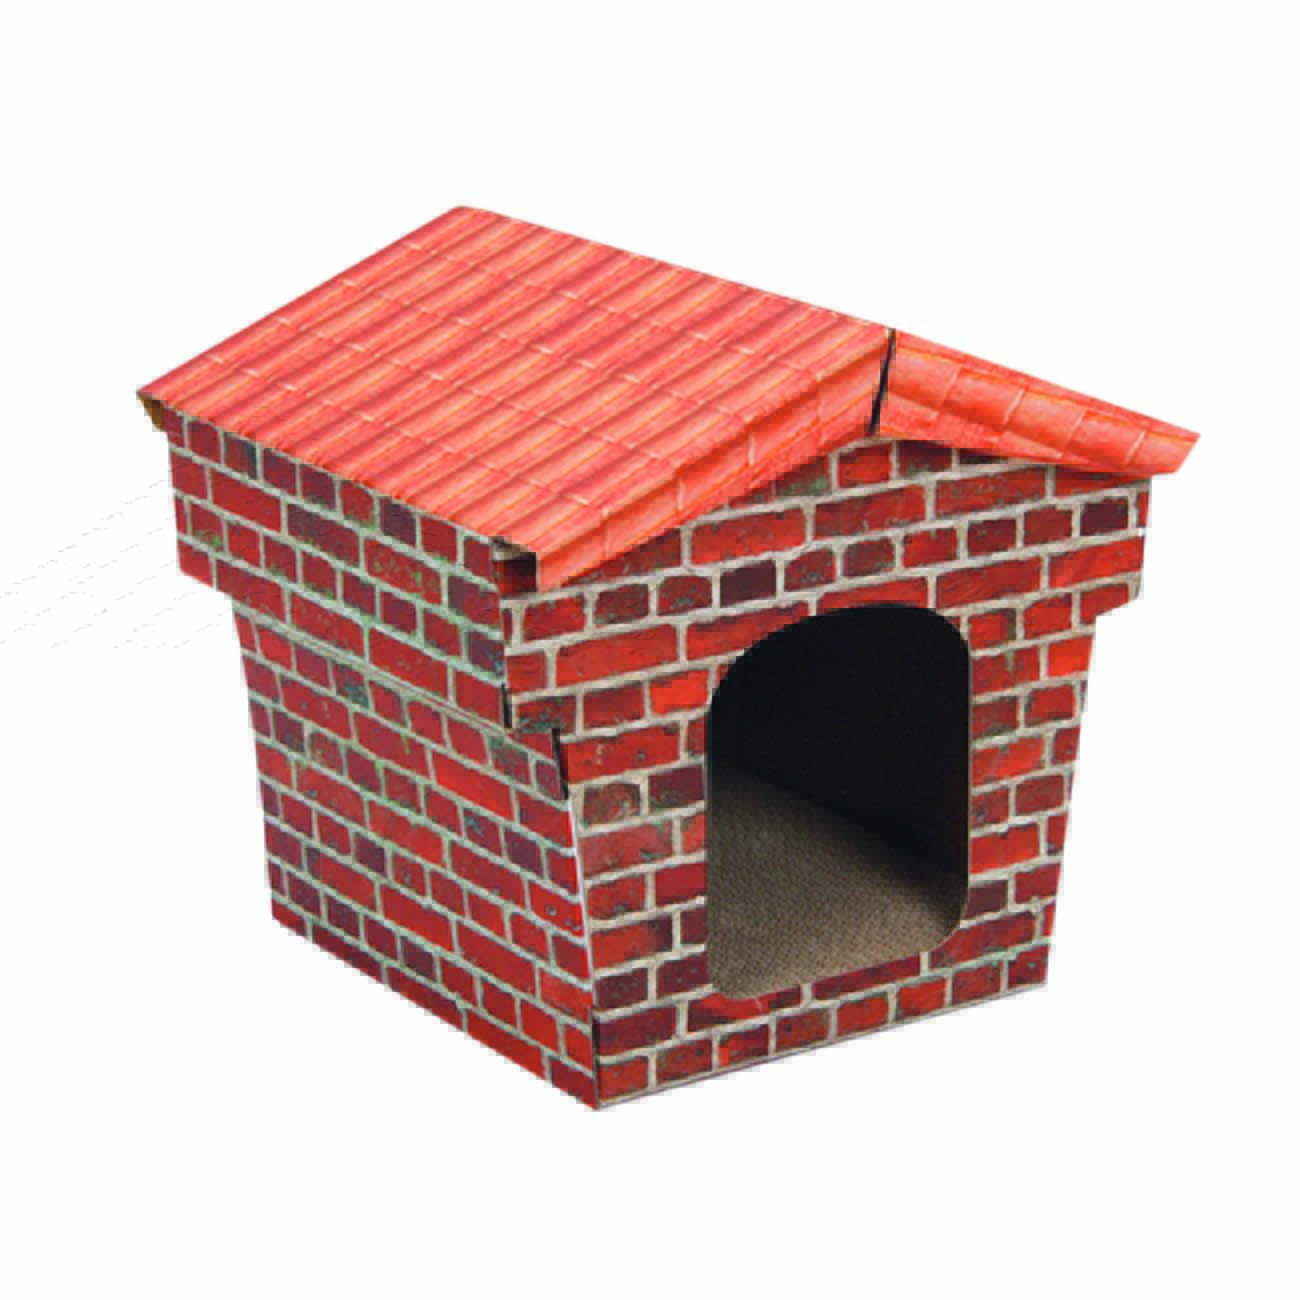 Casinha de gato em formato de casa de tijolos com telhado de telha marrom